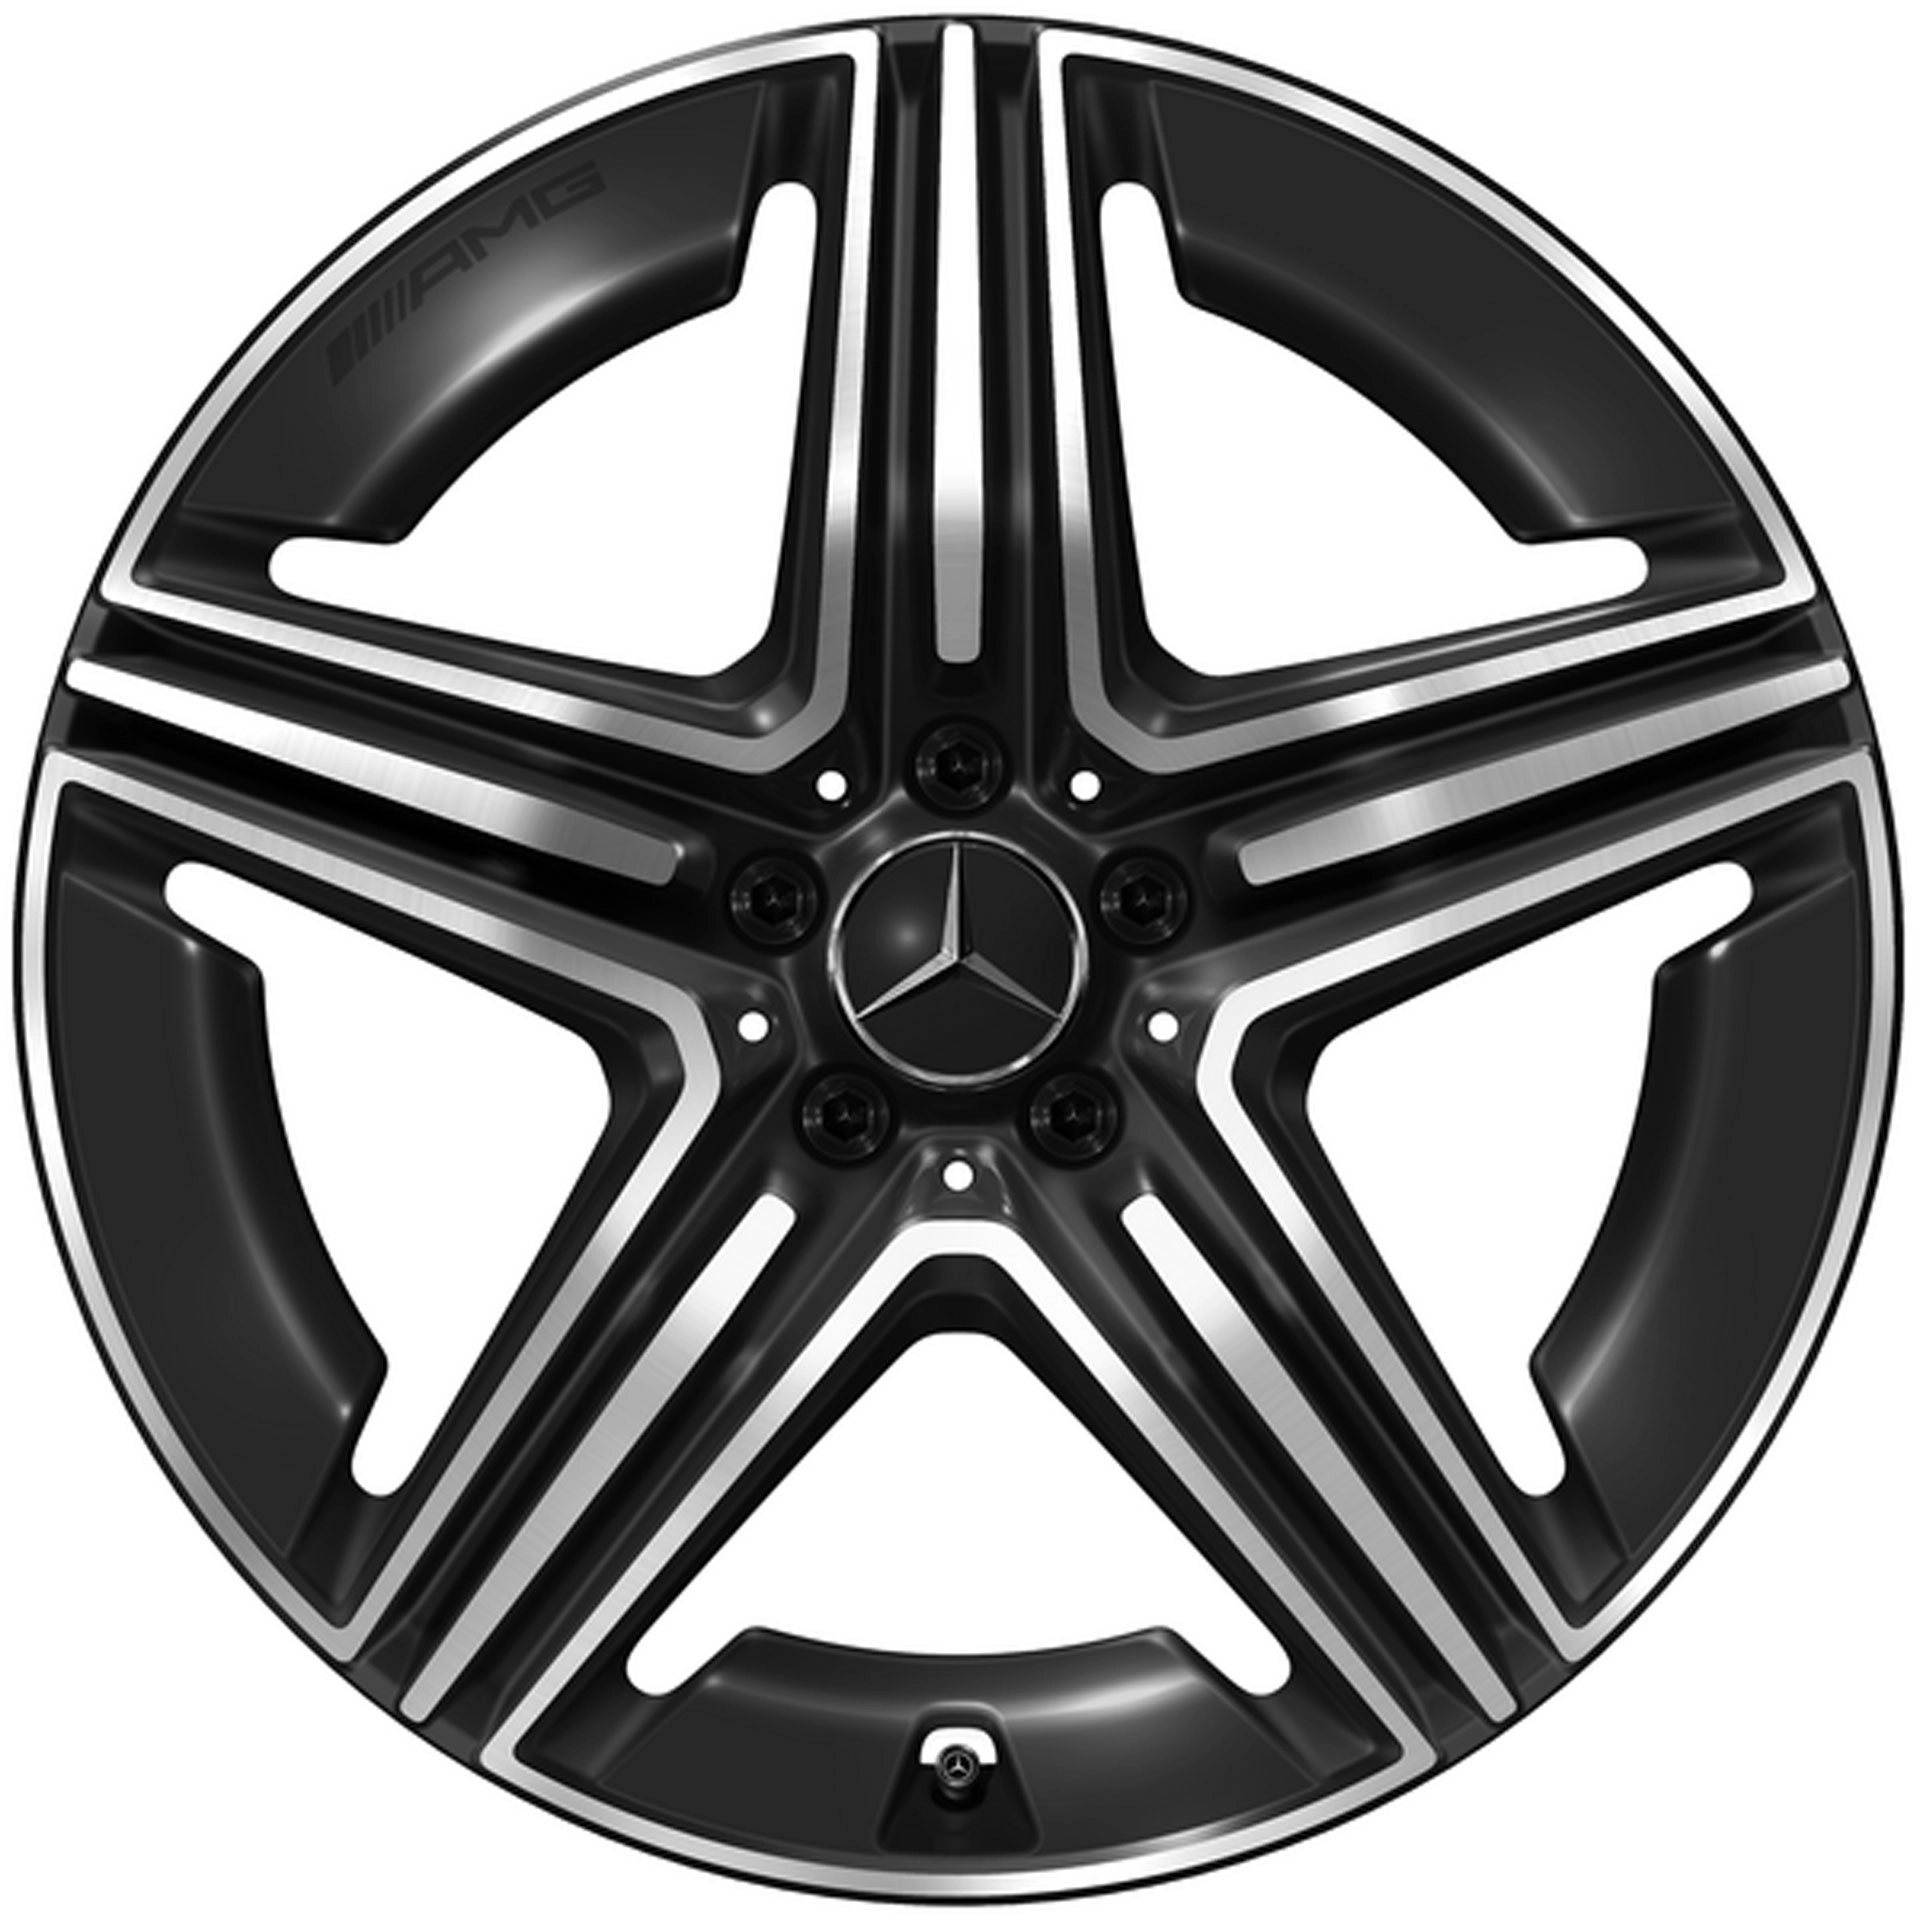 Mercedes-AMG 5-Doppelspeichen-Rad 20 Zoll Leichtmetallfelge GLC X254 schwarz glanzgedreht A25440107007X23